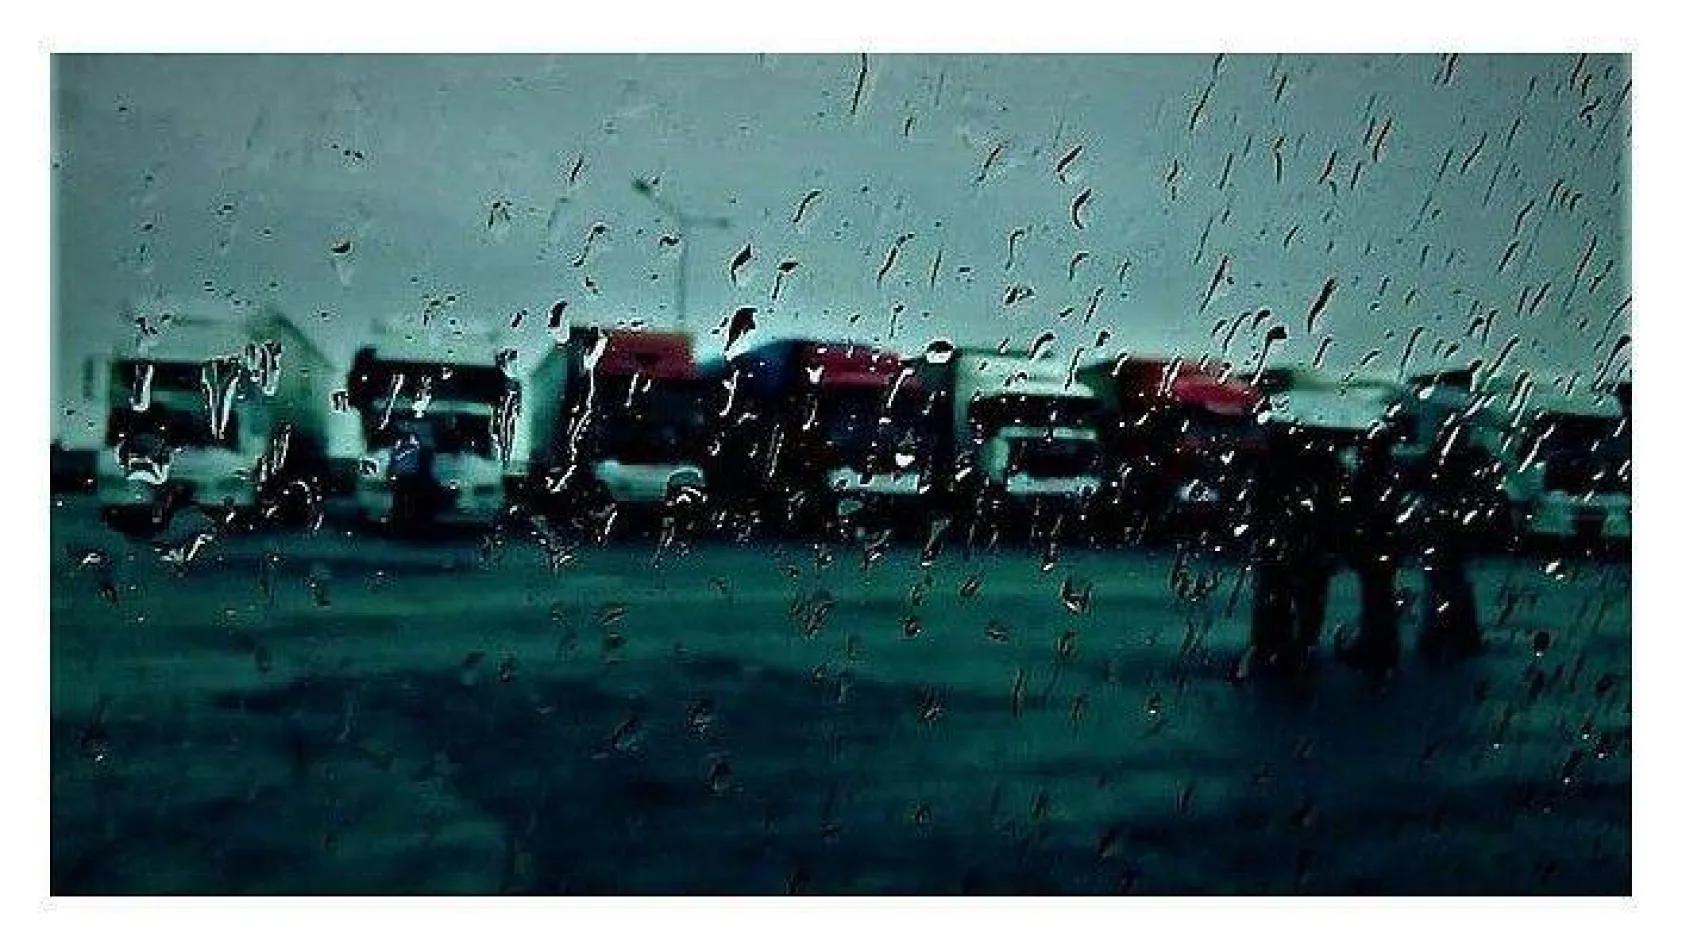 AKOM'dan İstanbul'a yağış uyarısı